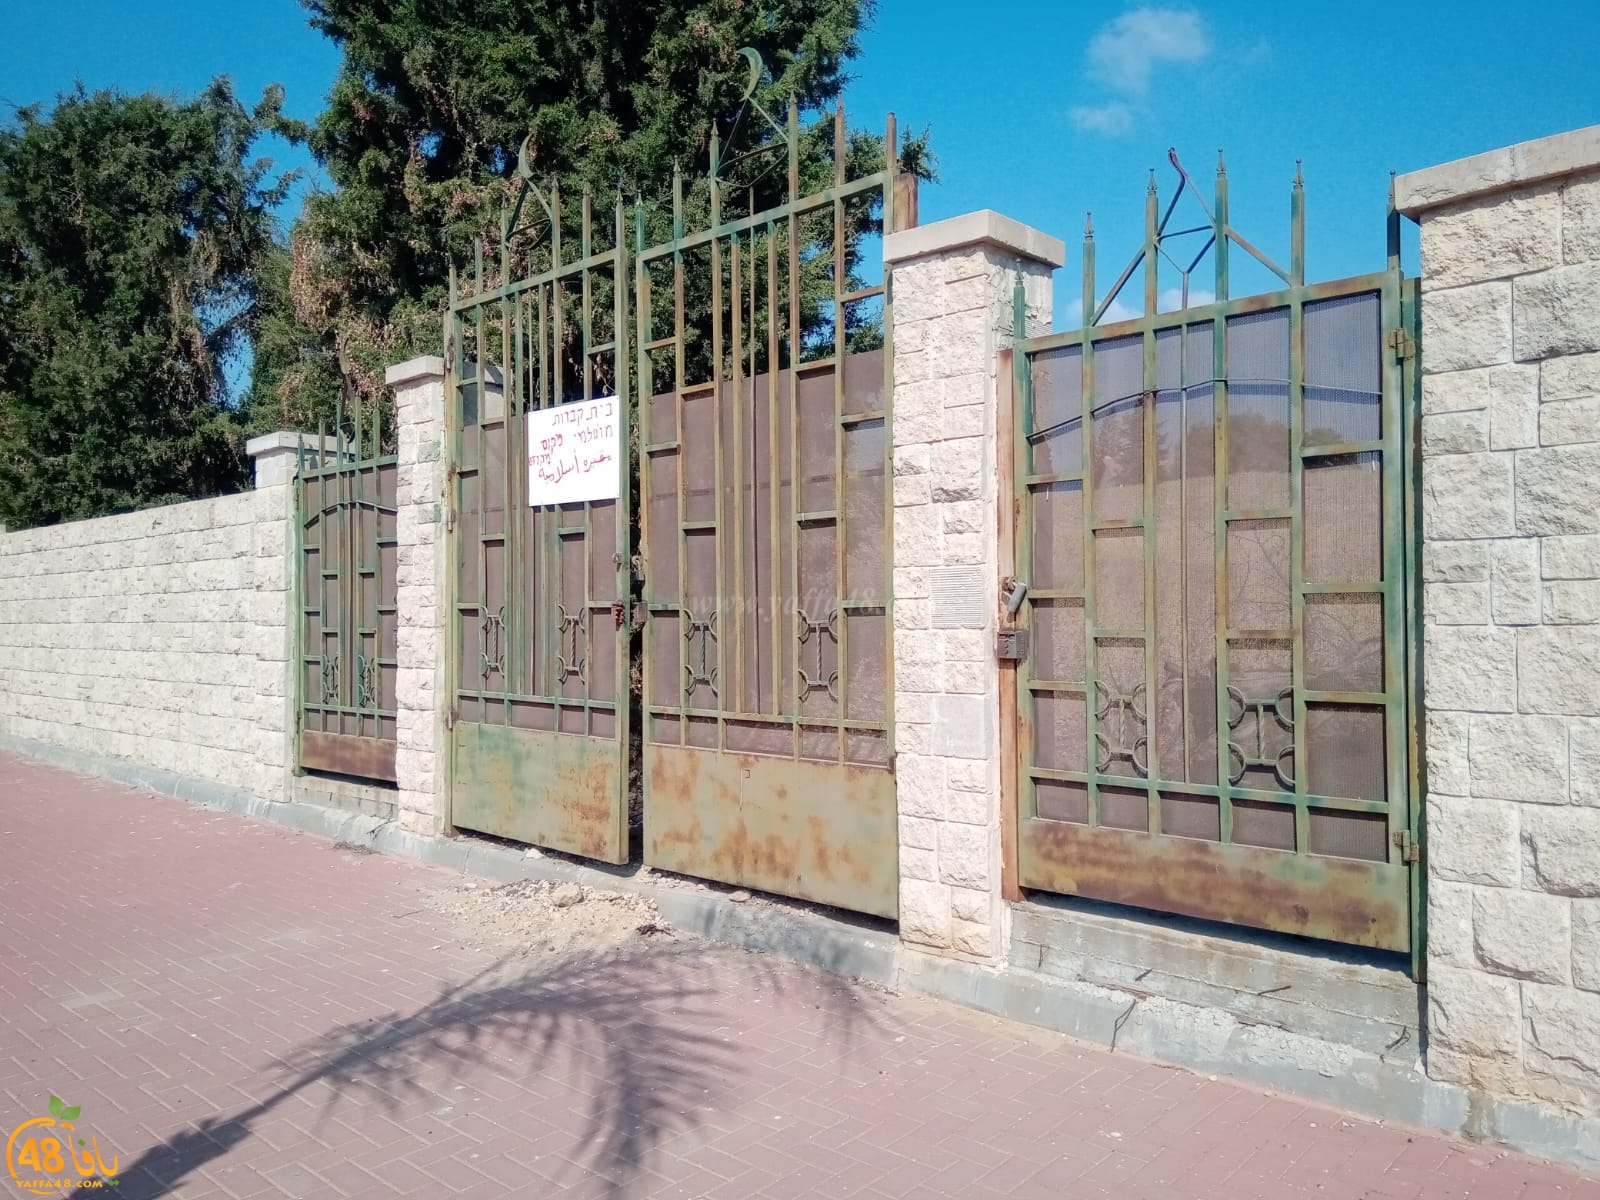  فيديو: دعوات لصيانة مقبرة قرية عاقر المهجرة جنوب الرملة 